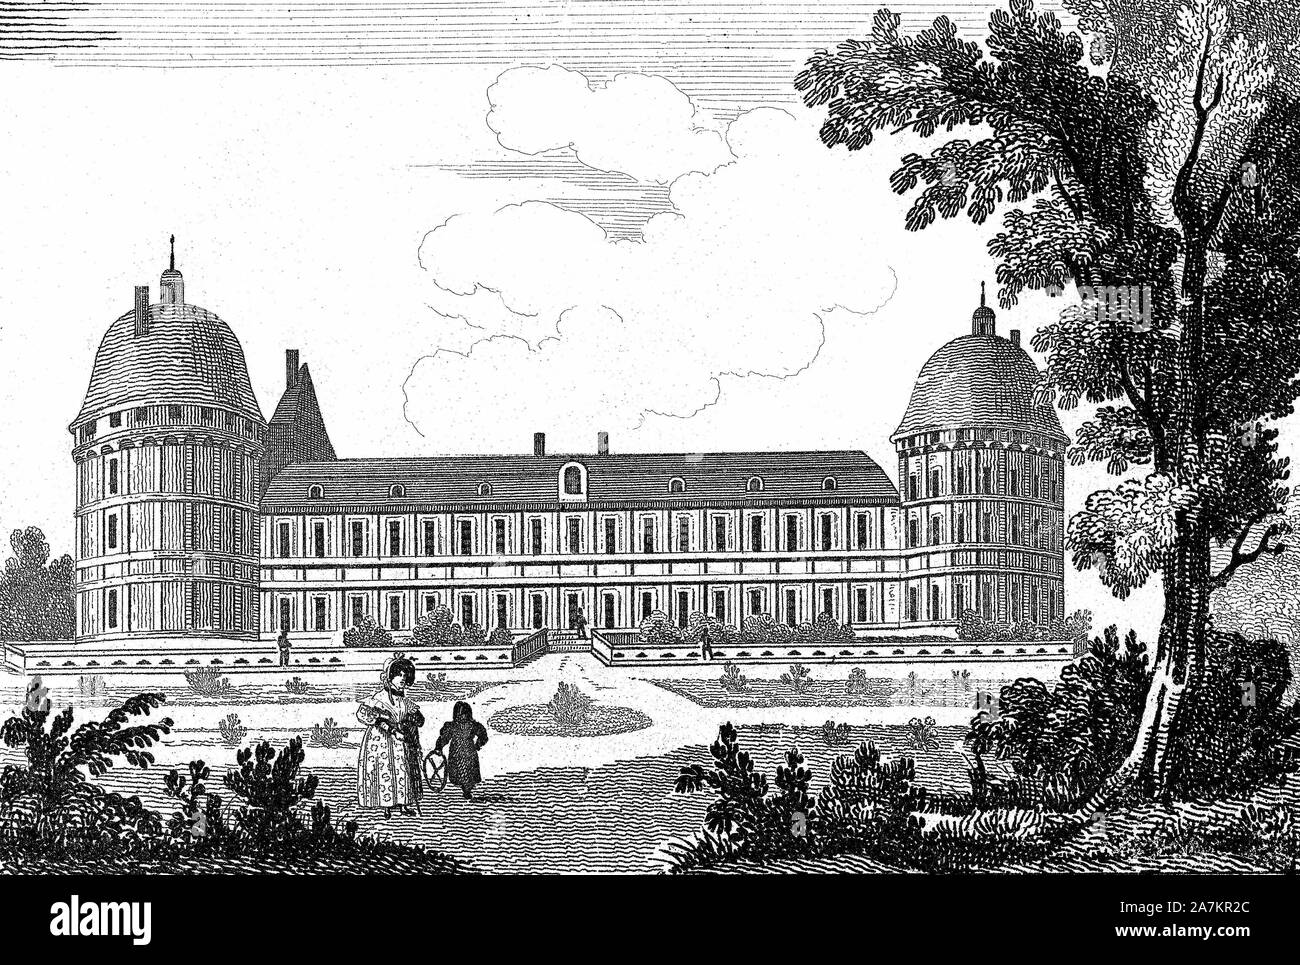 Chateau de la Loire : Vue du chateau de Valençay dans le Val-de-Loire (Val de Loire). in 'France Pittoresque', A. Hugo, tome II, 1835. Stock Photo